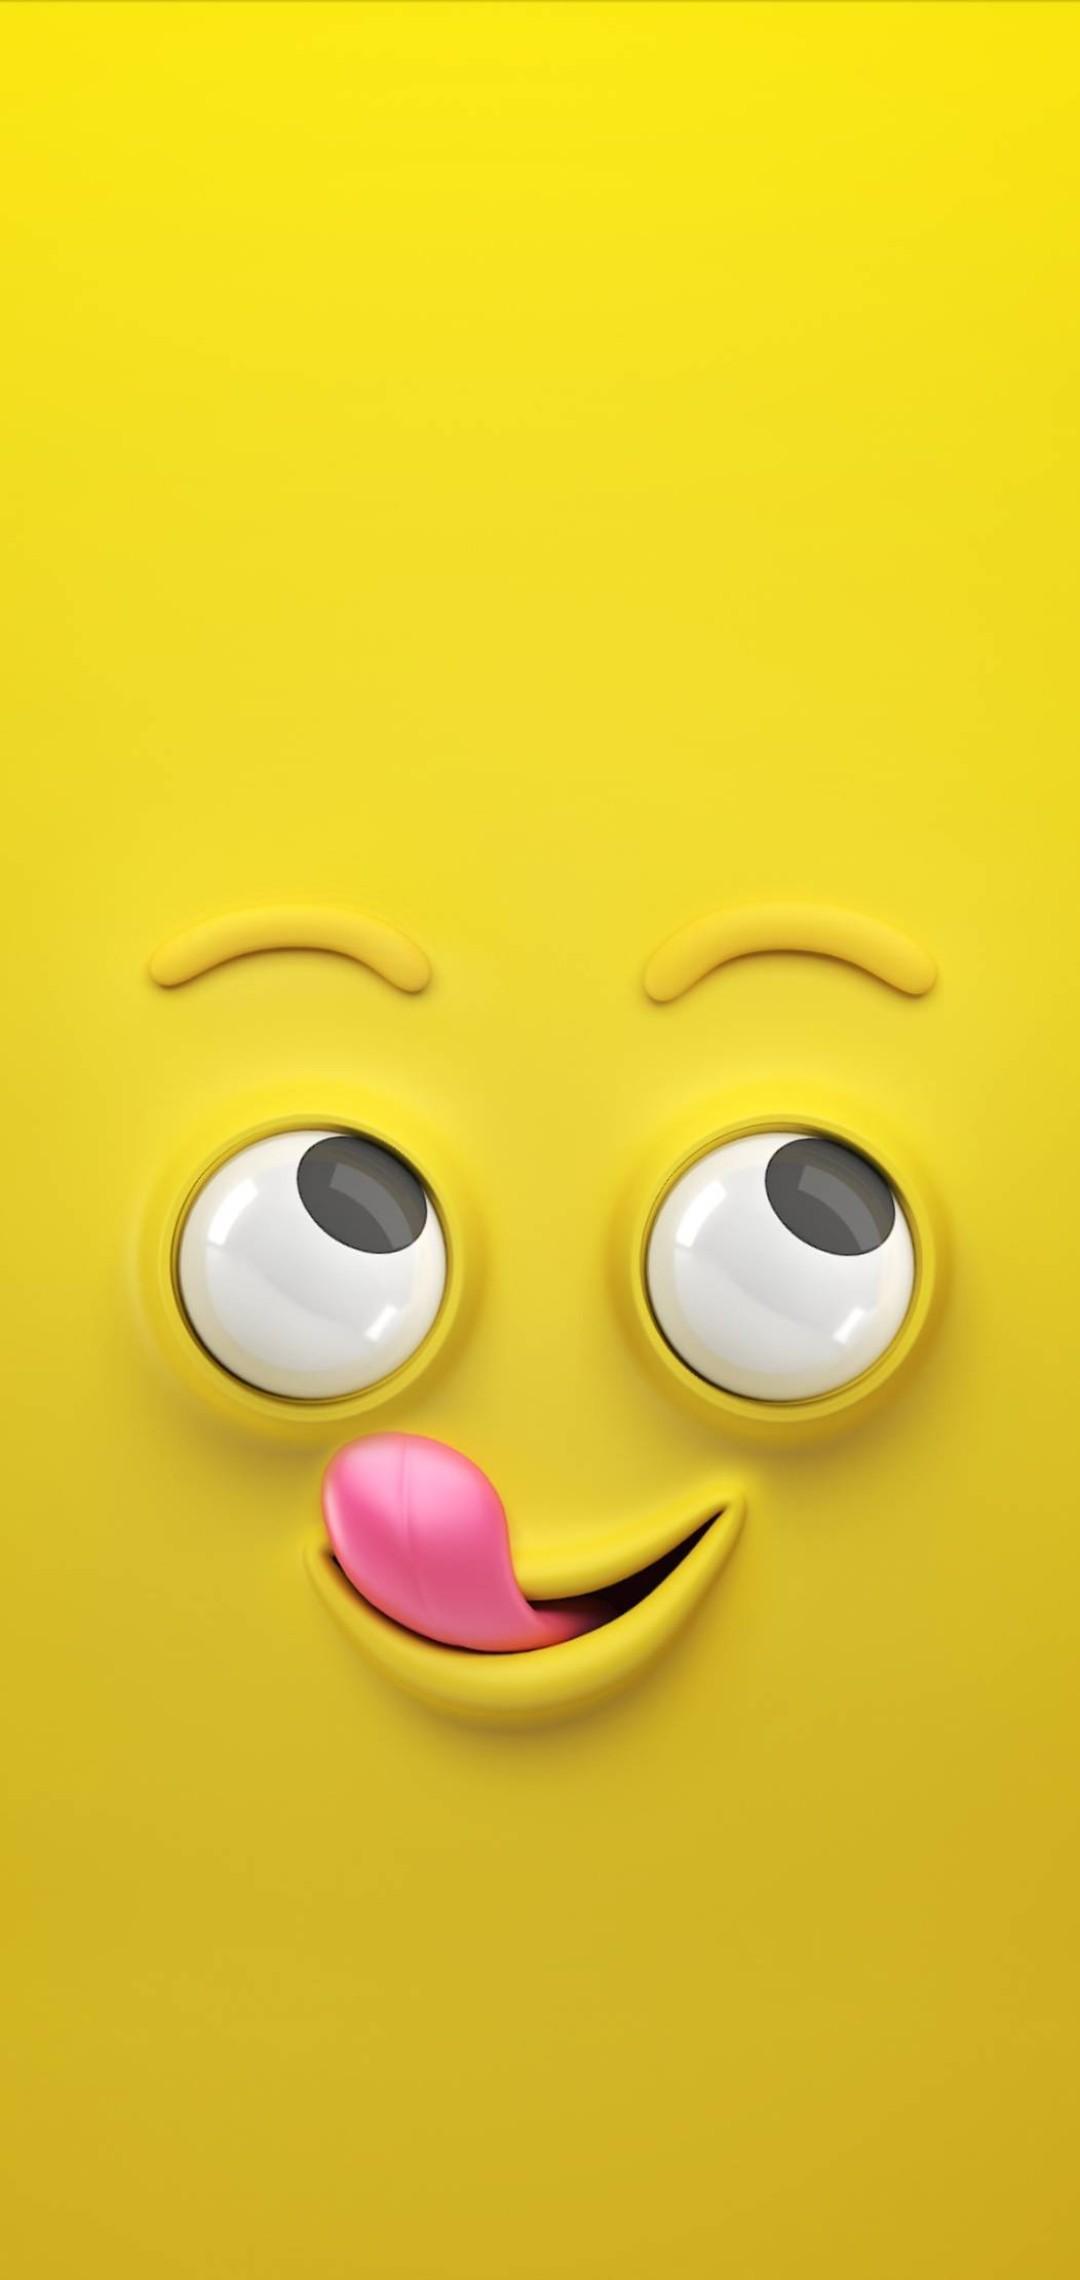 Hình nền Emoji trên WallpaperDog: Tại WallpaperDog, bạn sẽ tìm thấy những hình nền emoji độc đáo và tuyệt vời nhất. Với danh sách đa dạng, bạn có thể dễ dàng tìm thấy những biểu tượng cảm xúc mà mình yêu thích và dùng để trang trí cho màn hình điện thoại của bạn. 